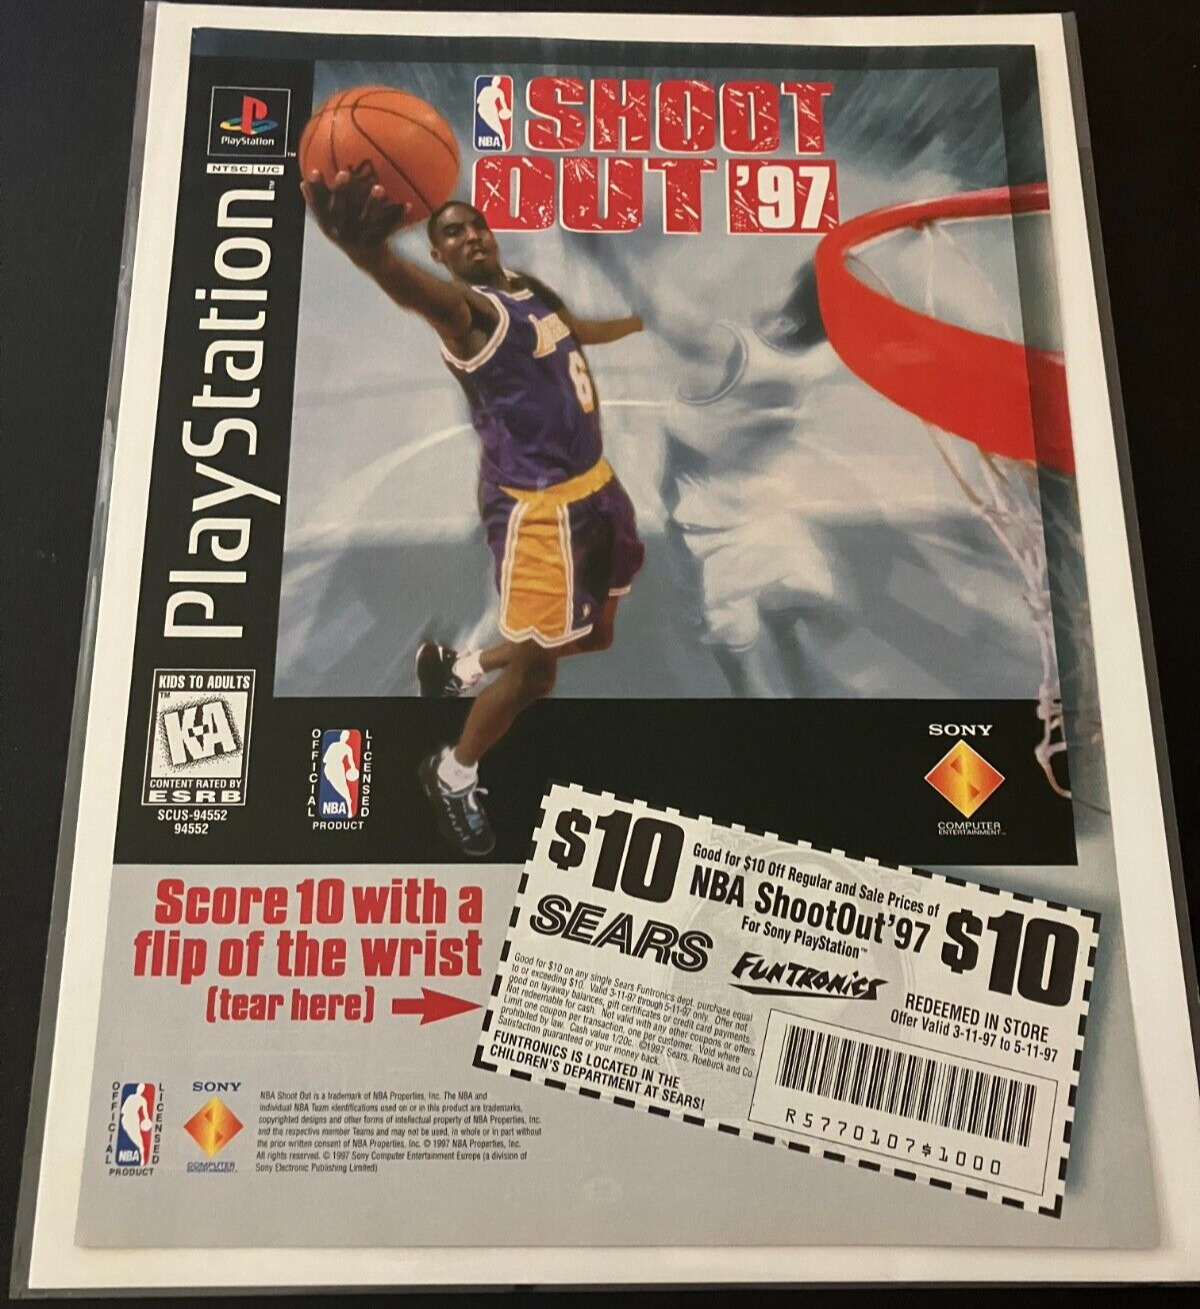 NBA ShootOut 97 at Sears - Vintage Kobe Bryant Game Print Ad / Wall Art - MINT